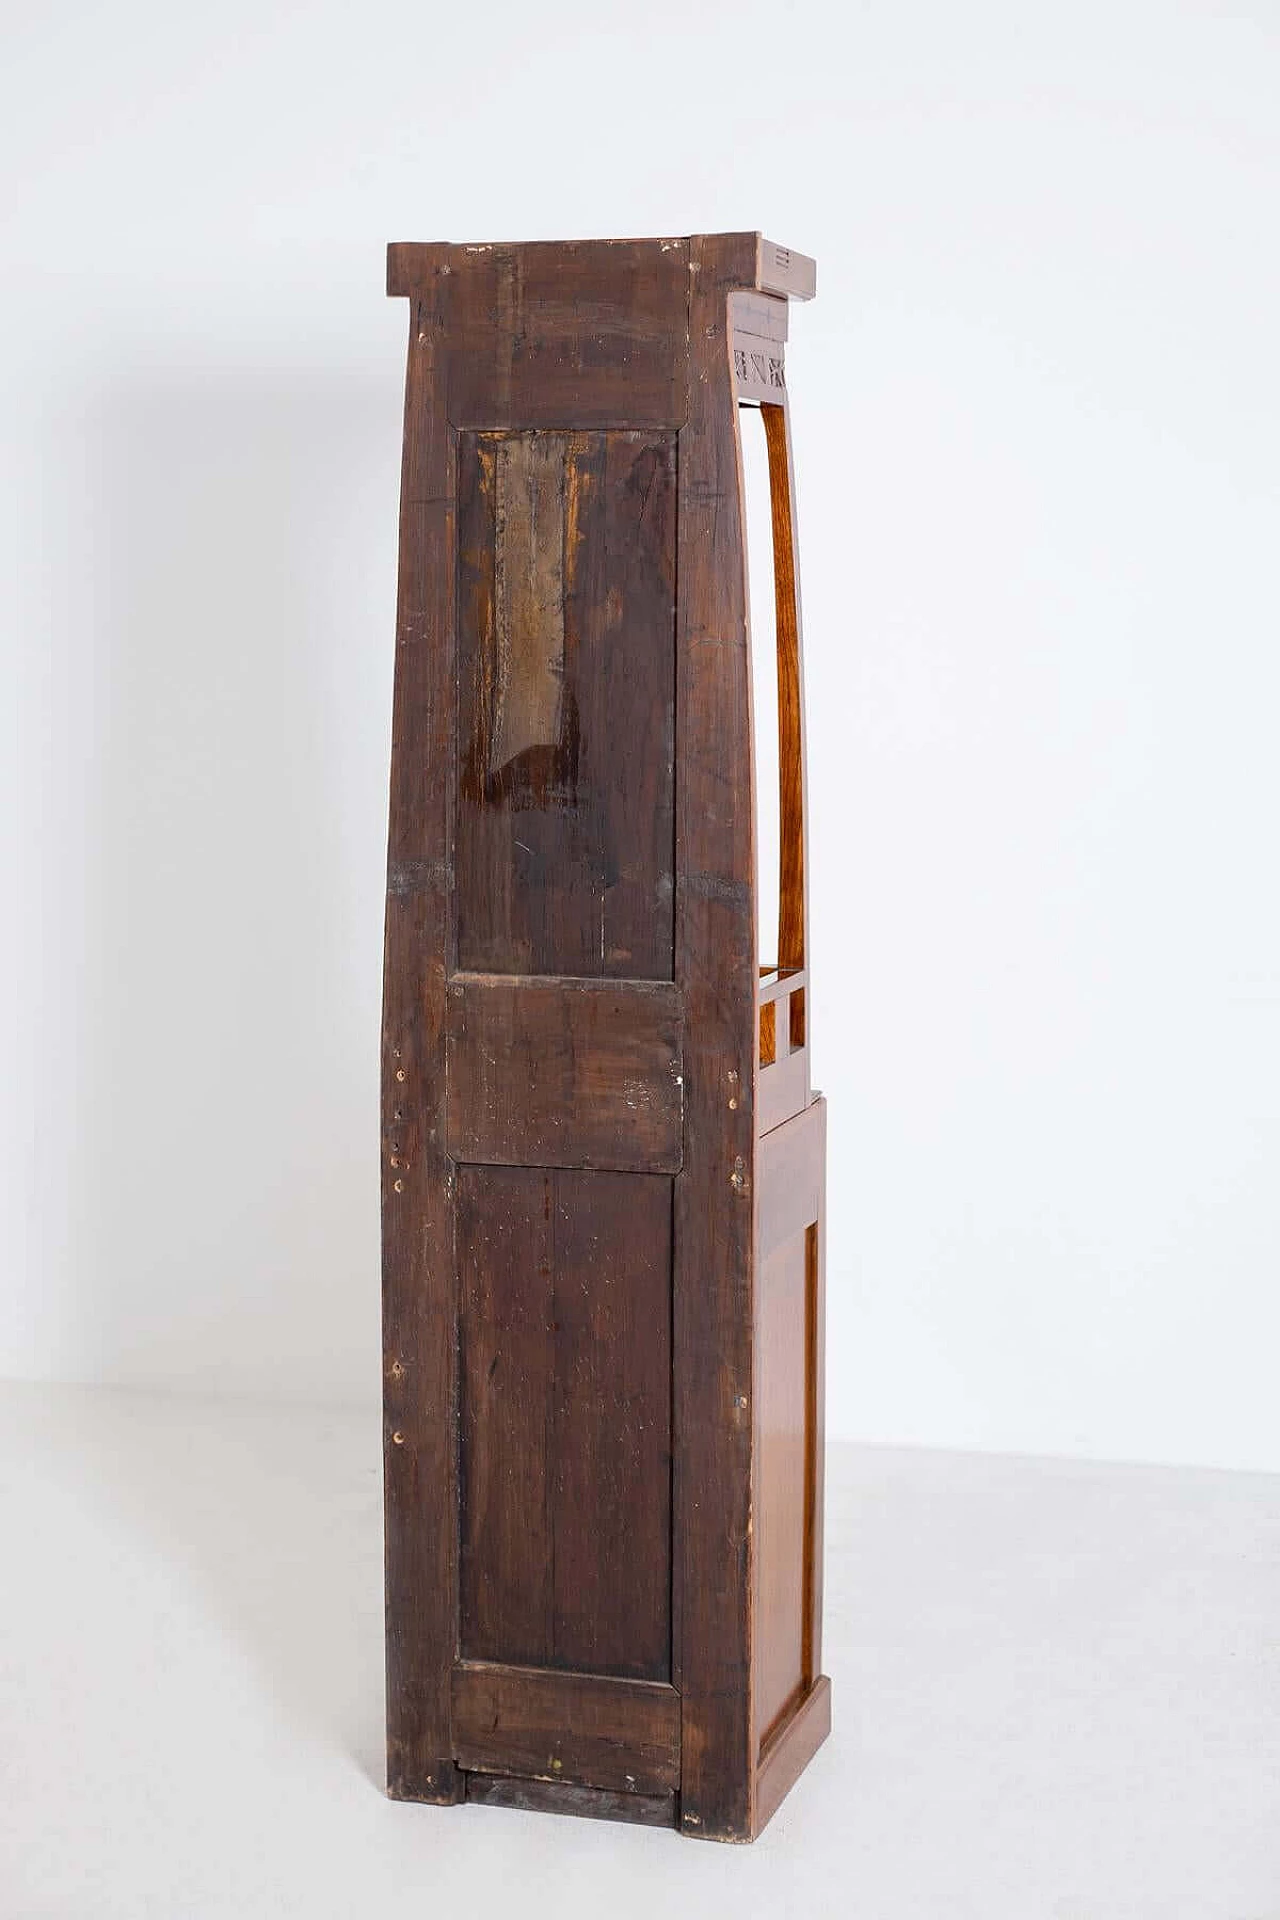 Mobile armadio in legno intagliato in stile Art Nouveau, del '900 1403436